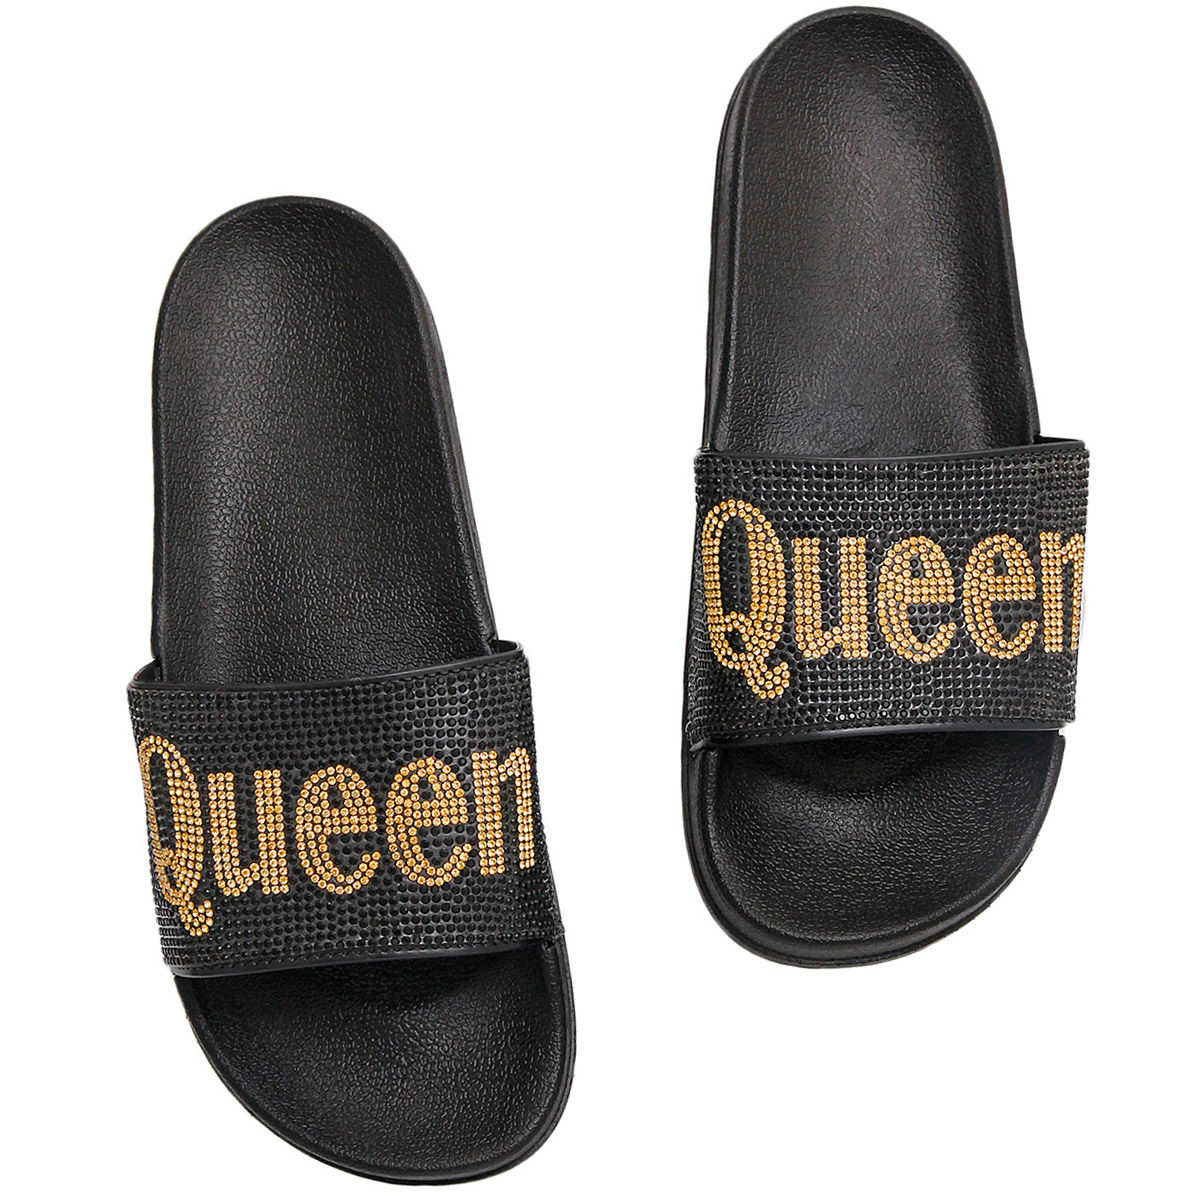 Size 8 Queen Black Slides